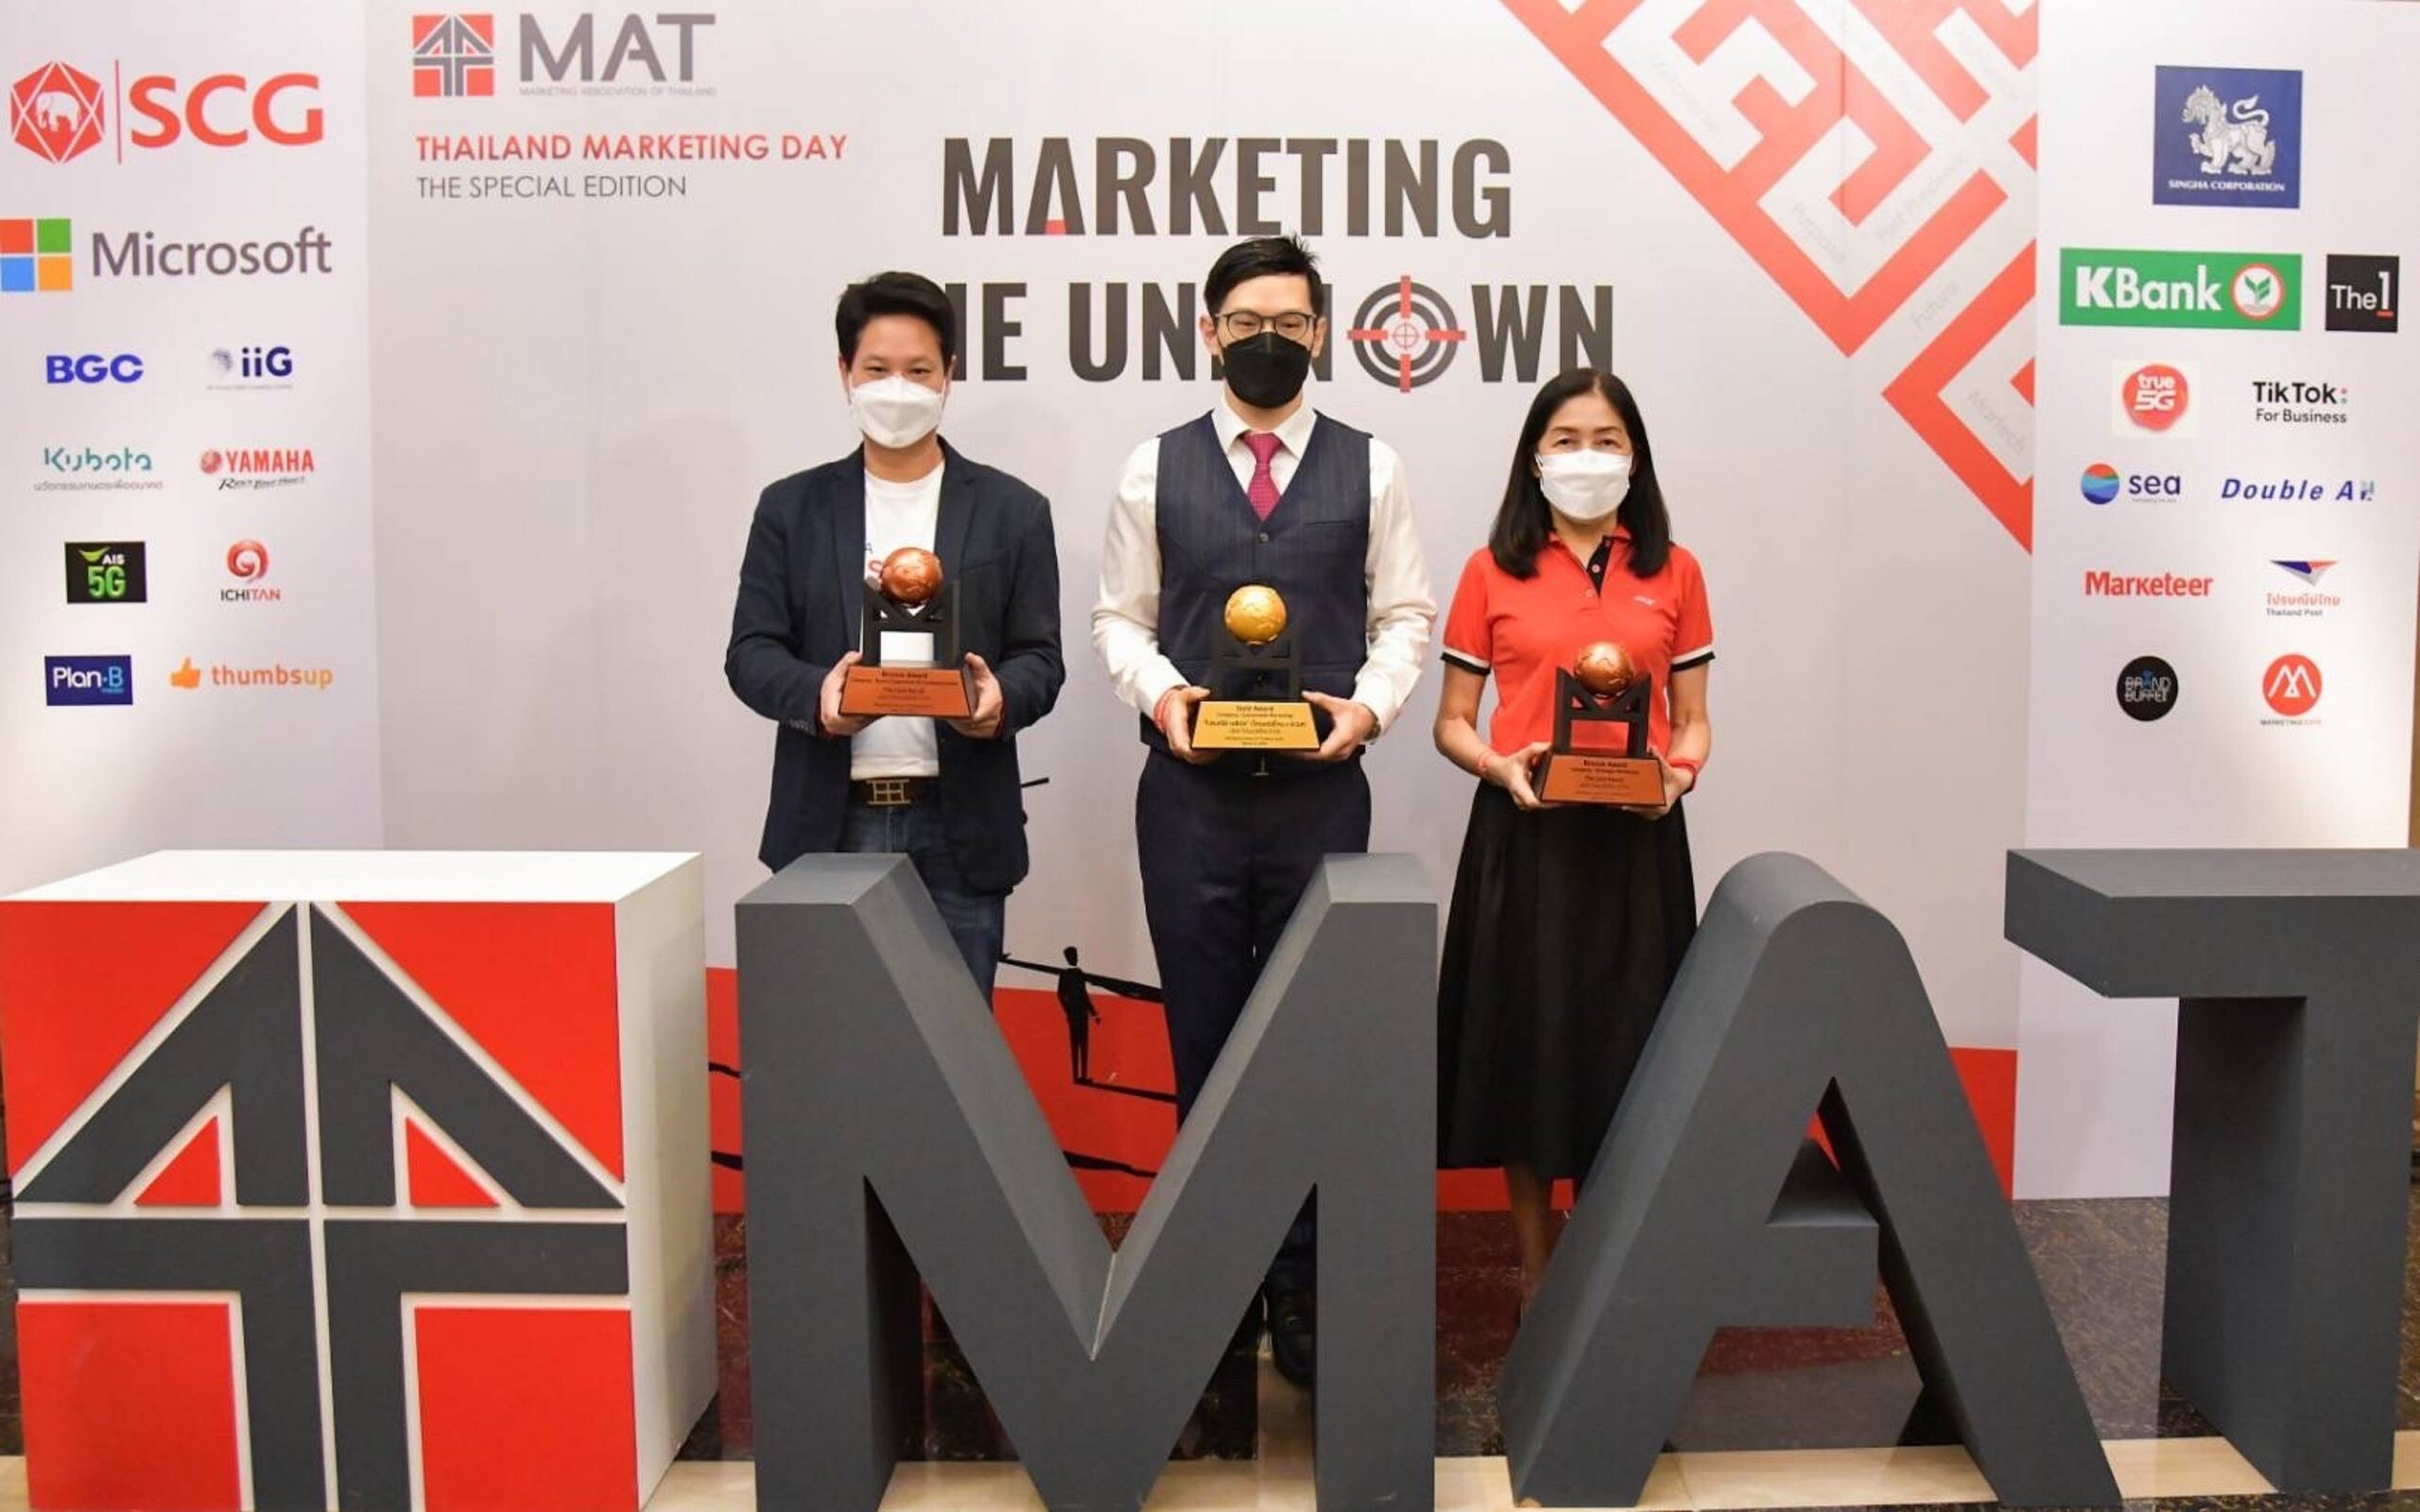 ไปรษณีย์ไทยคว้า 3 สุดยอดรางวัลด้านการตลาด จากเวที MAT AWARD